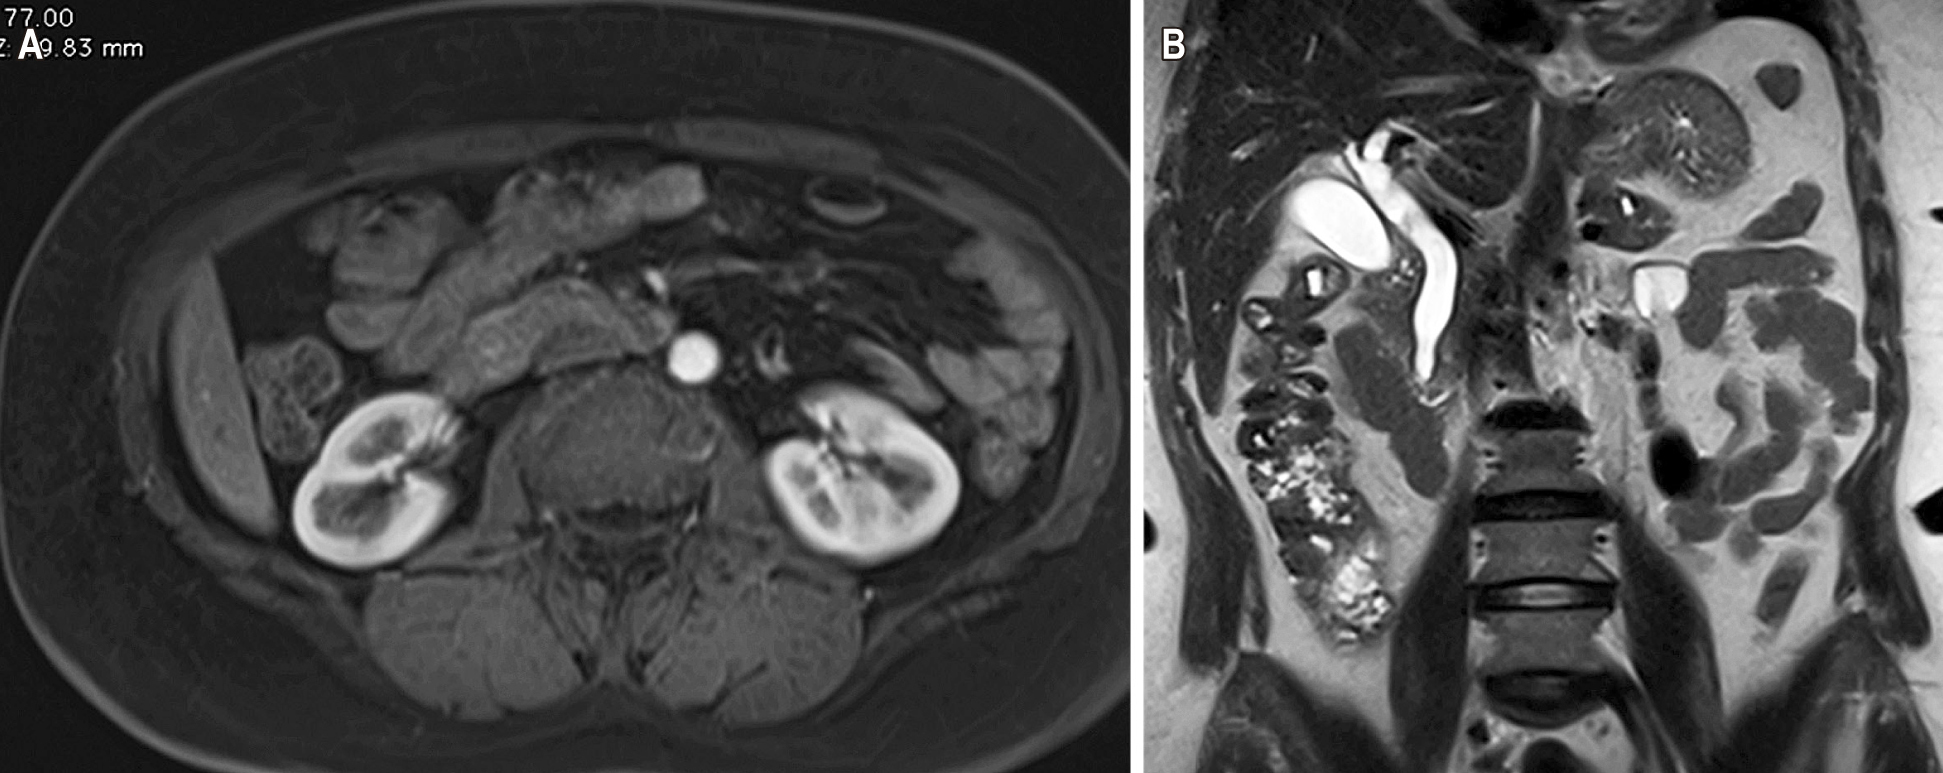 Figura 2. Resonancia magnética contrastada con evidencia de dilatación en la vía biliar intra- y extrahepática secundaria a lesión periampular (A) en corte axial y (B) corte coronal. Fuente: archivo de los autores